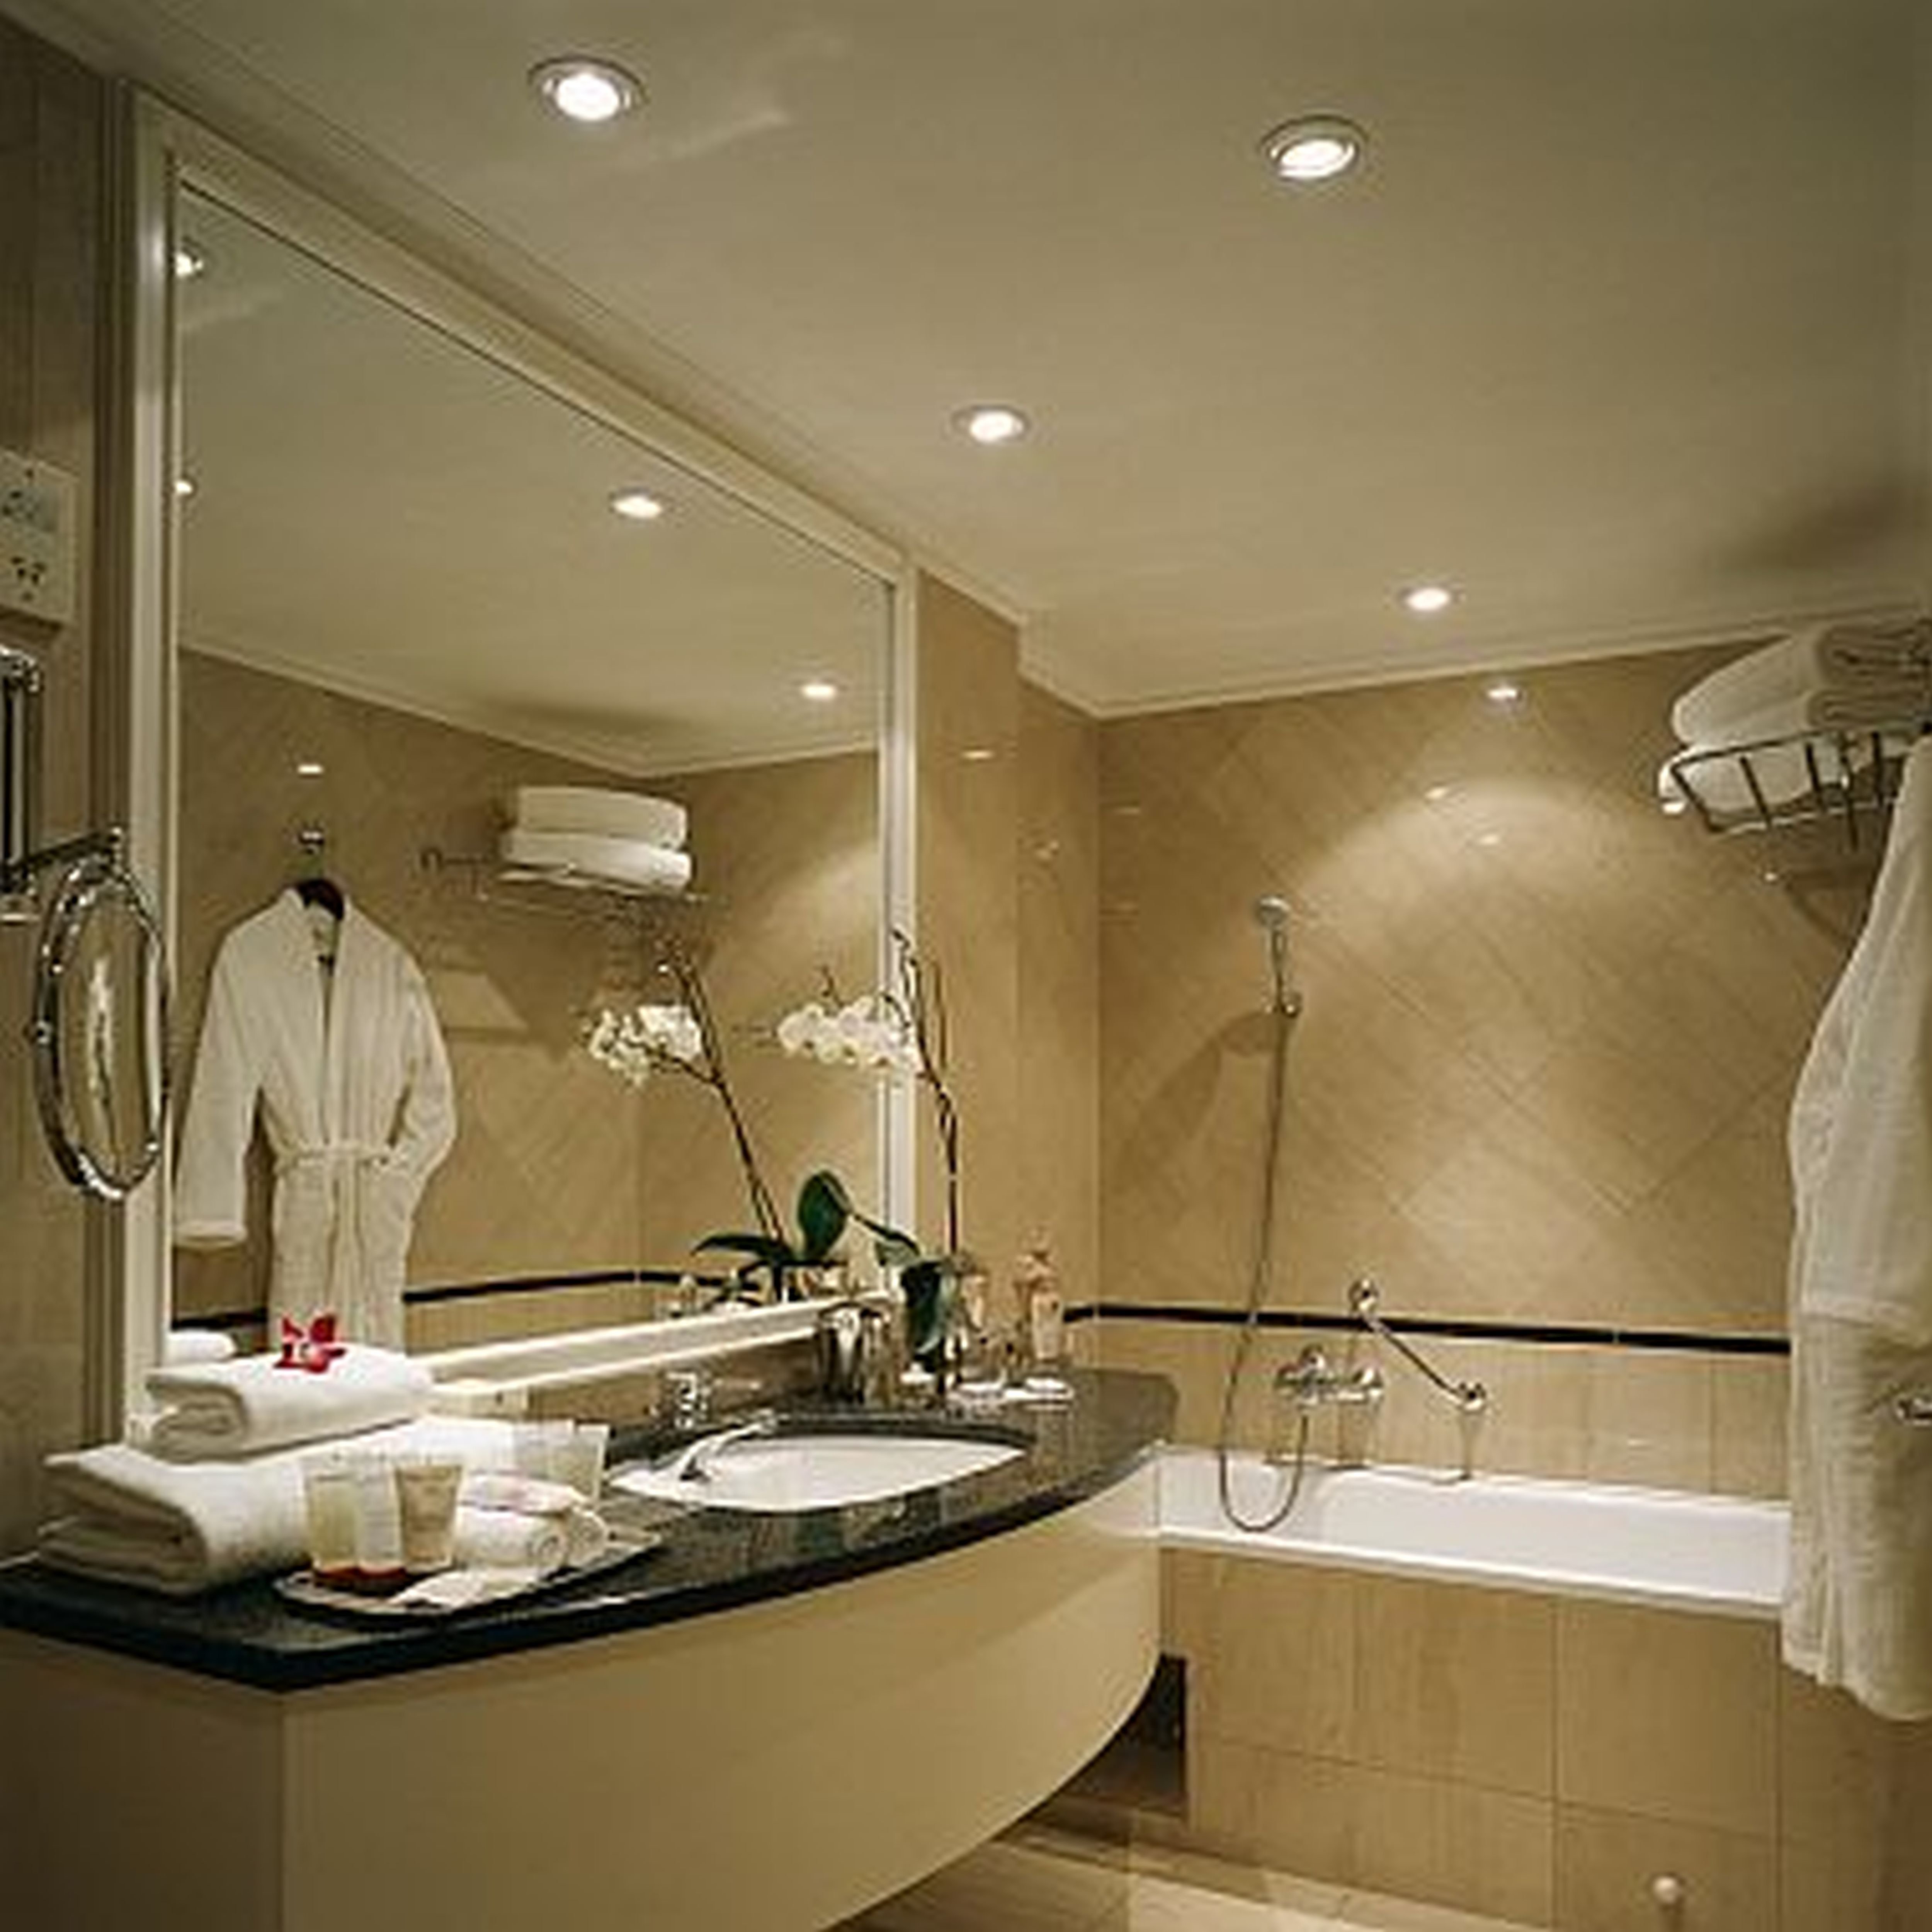 S vanna. Ванные комнаты Хаят Редженси. Ванные комнаты в гостиницах. Ванная комната в стиле отеля. Ванна в отеле.